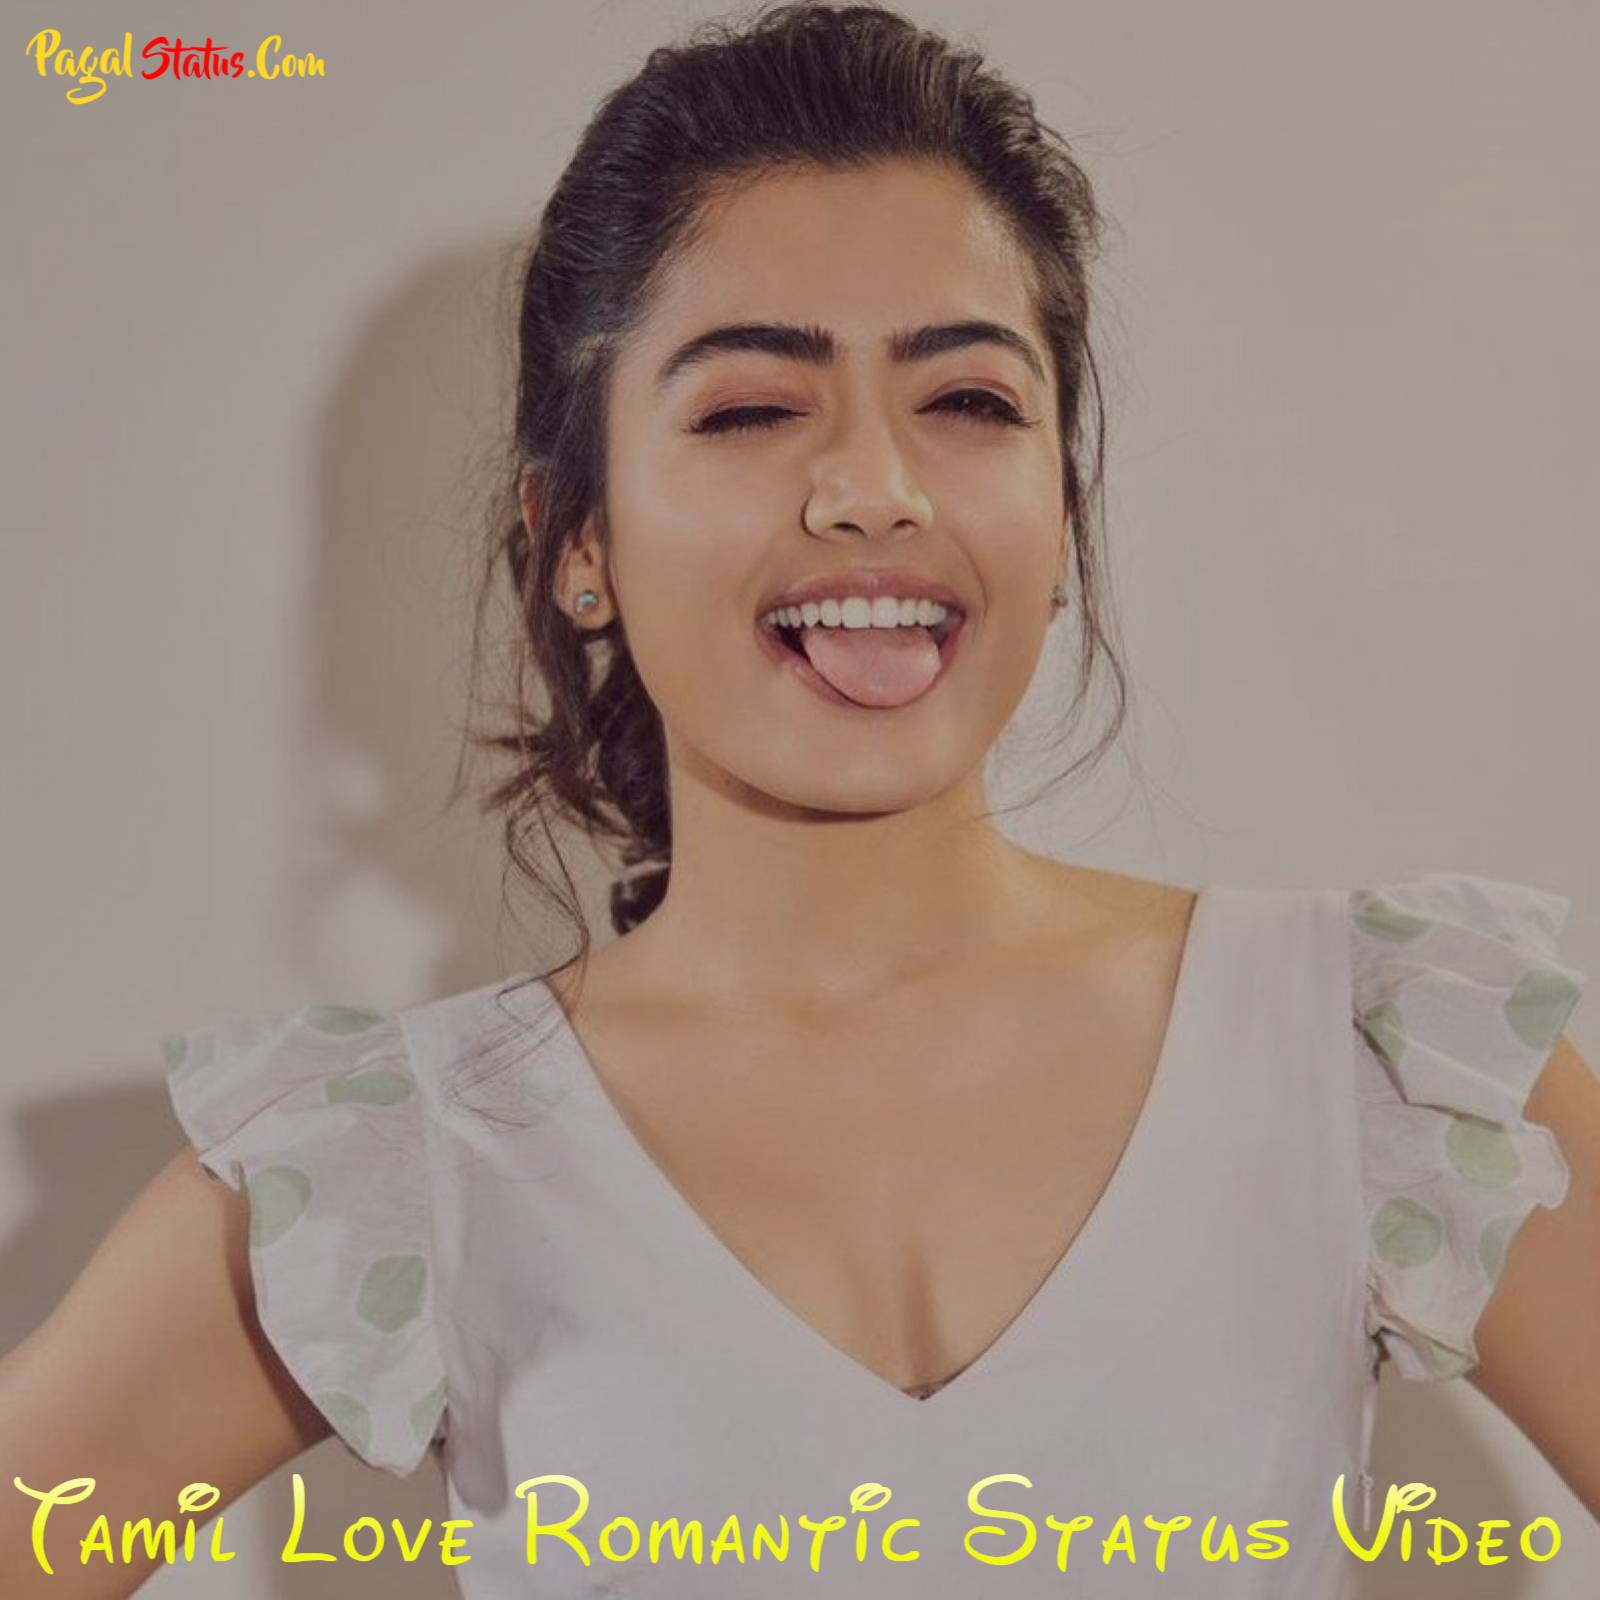 Tamil Love Romantic Status Video Download, Tamil Love Romantic Status